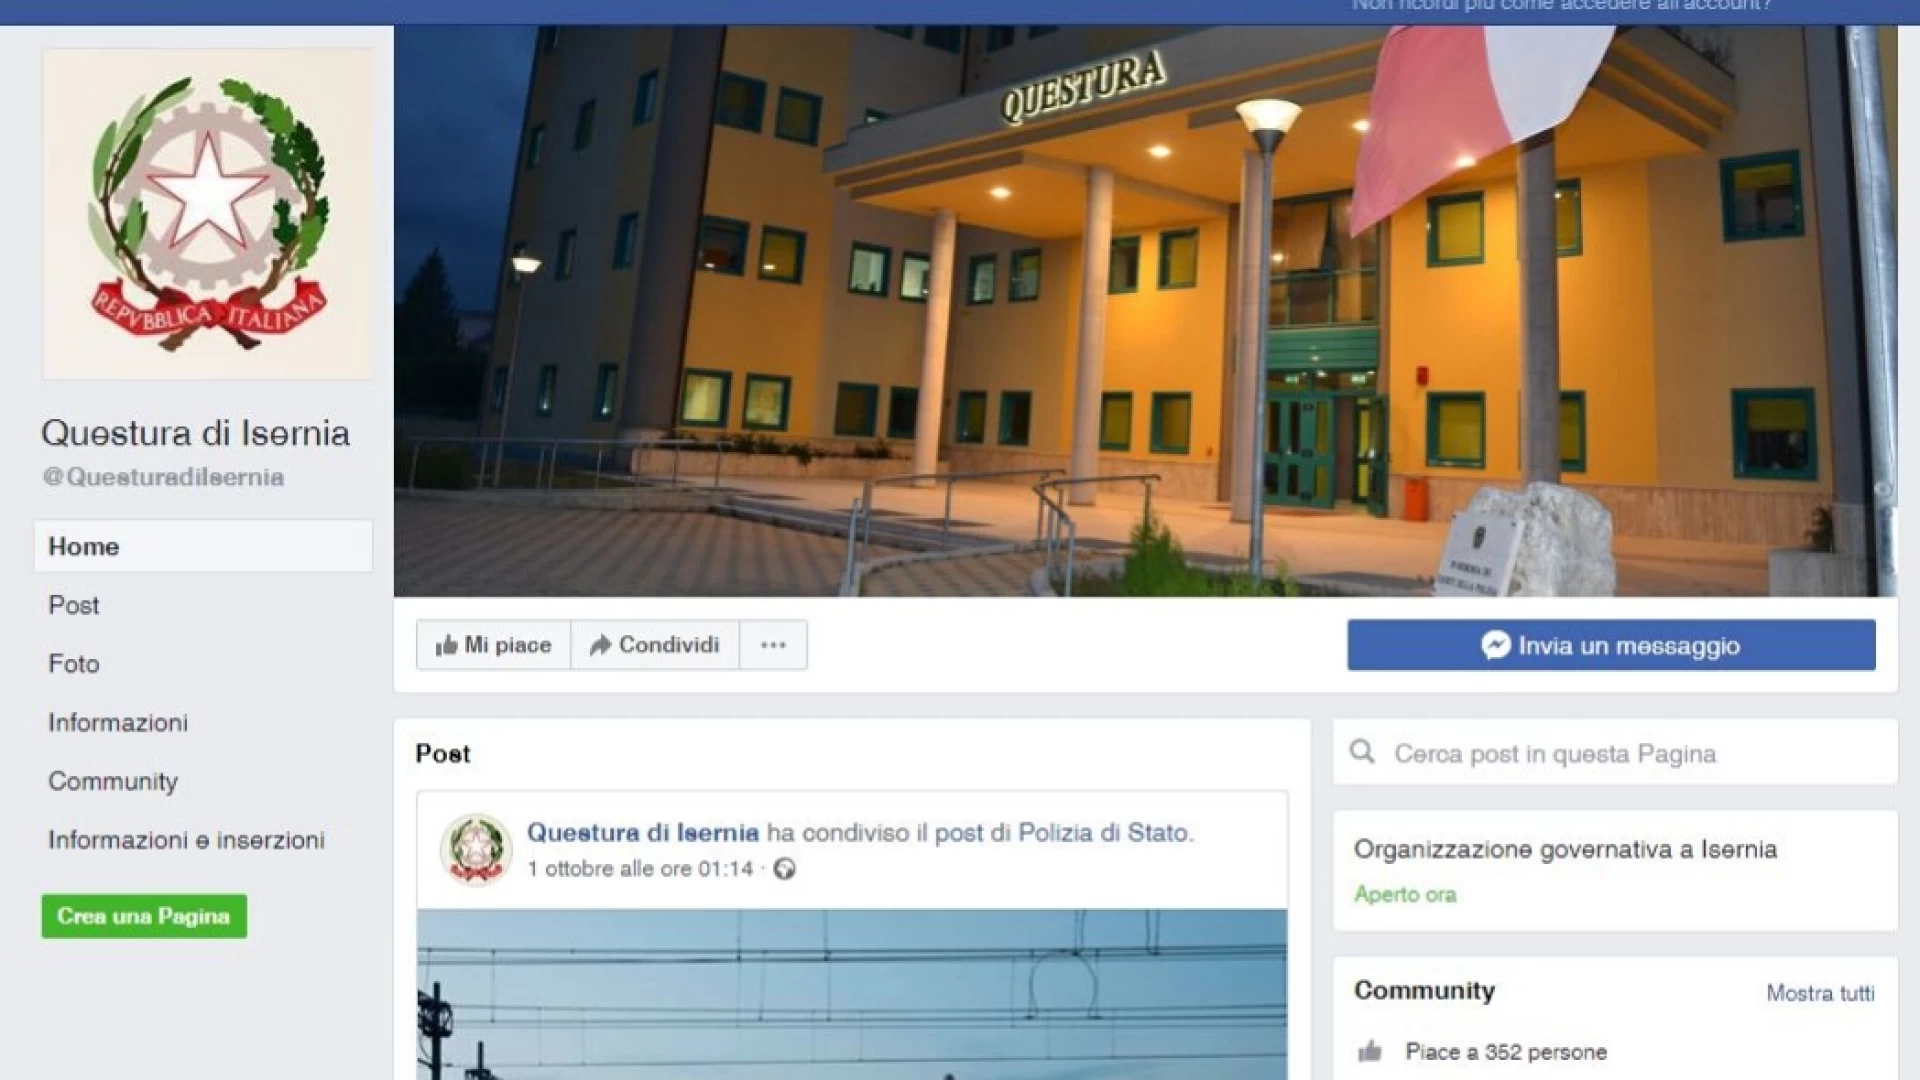 La Questura di Isernia attiva la pagina ufficiale Facebook.